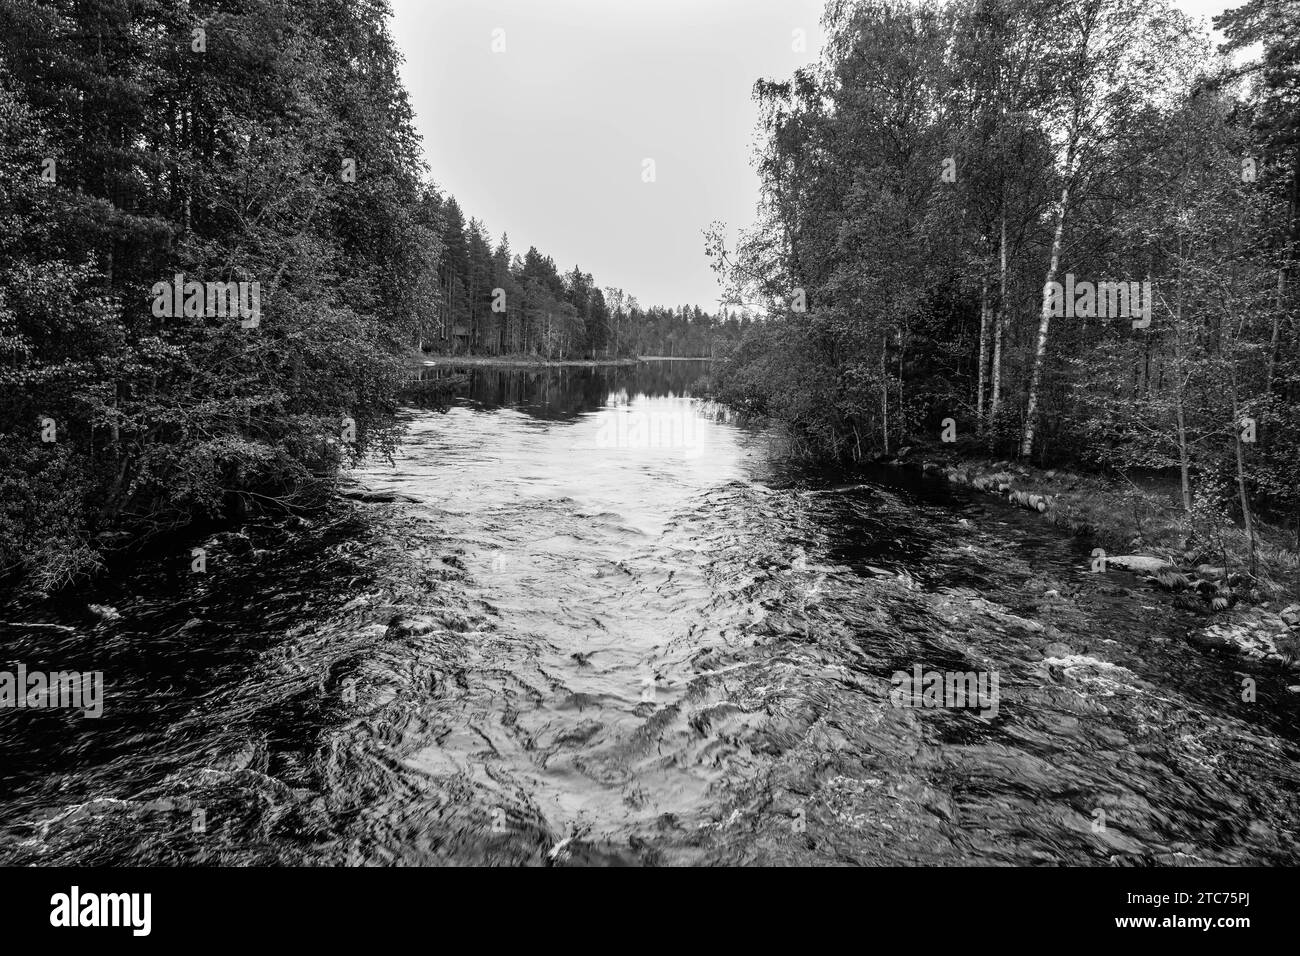 Rivière Kalliojoki favorisée par les pêcheurs et les canoéistes, Kuhmo Finlande juin 2023 Banque D'Images